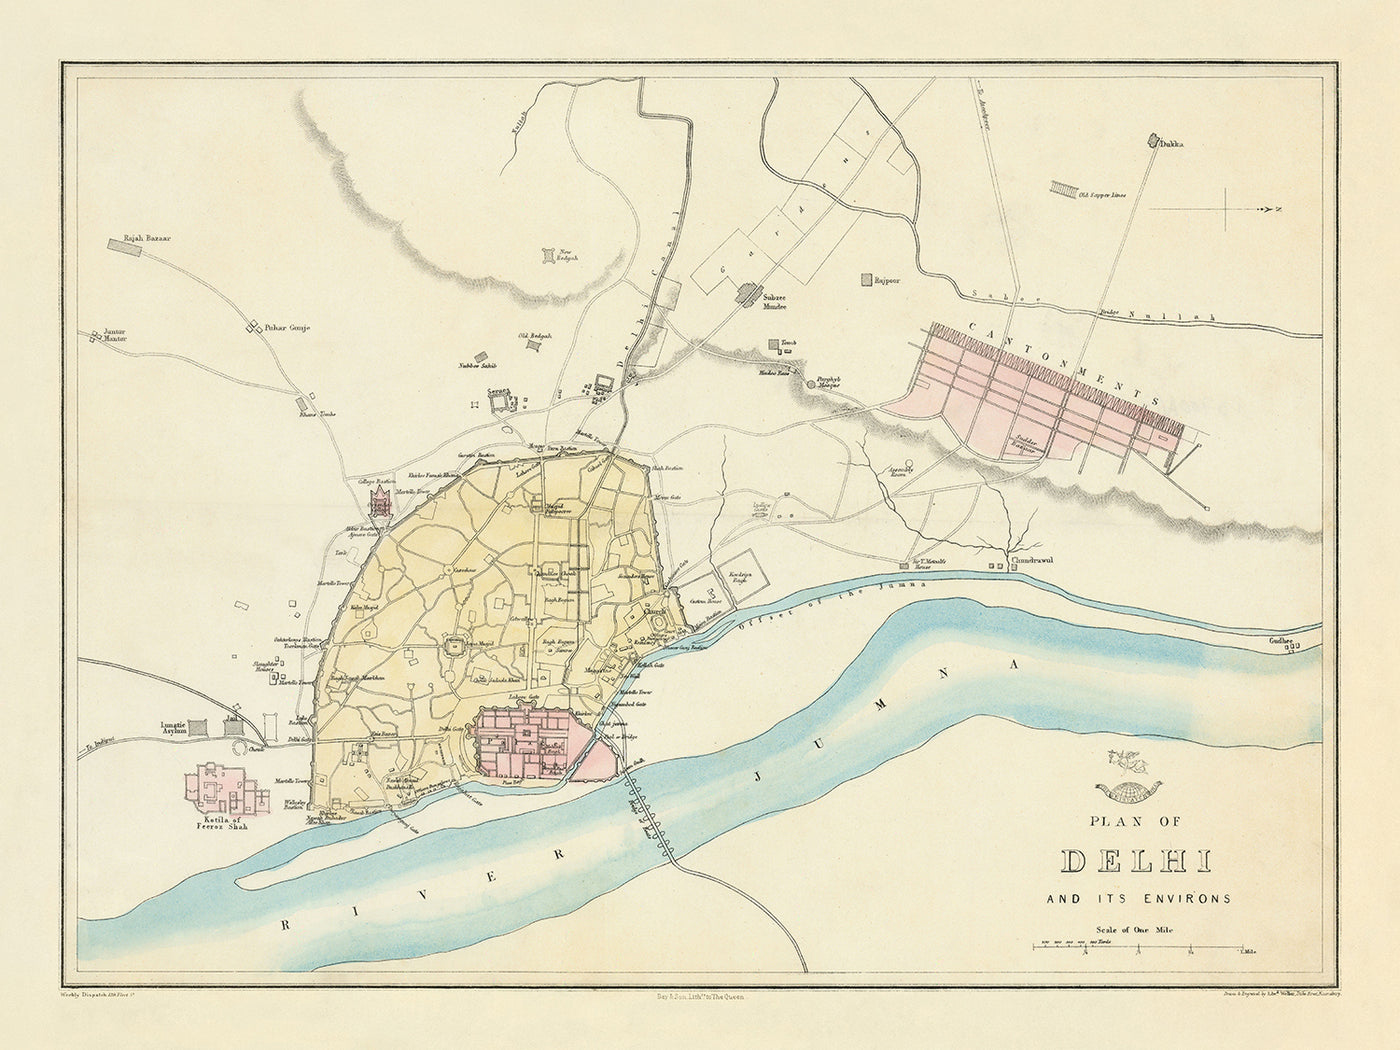 Alte Karte von Delhi von Weller, 1860: Jama Musjid, der Palast, die Bootsbrücke, die Kantone, der Fluss Jumna